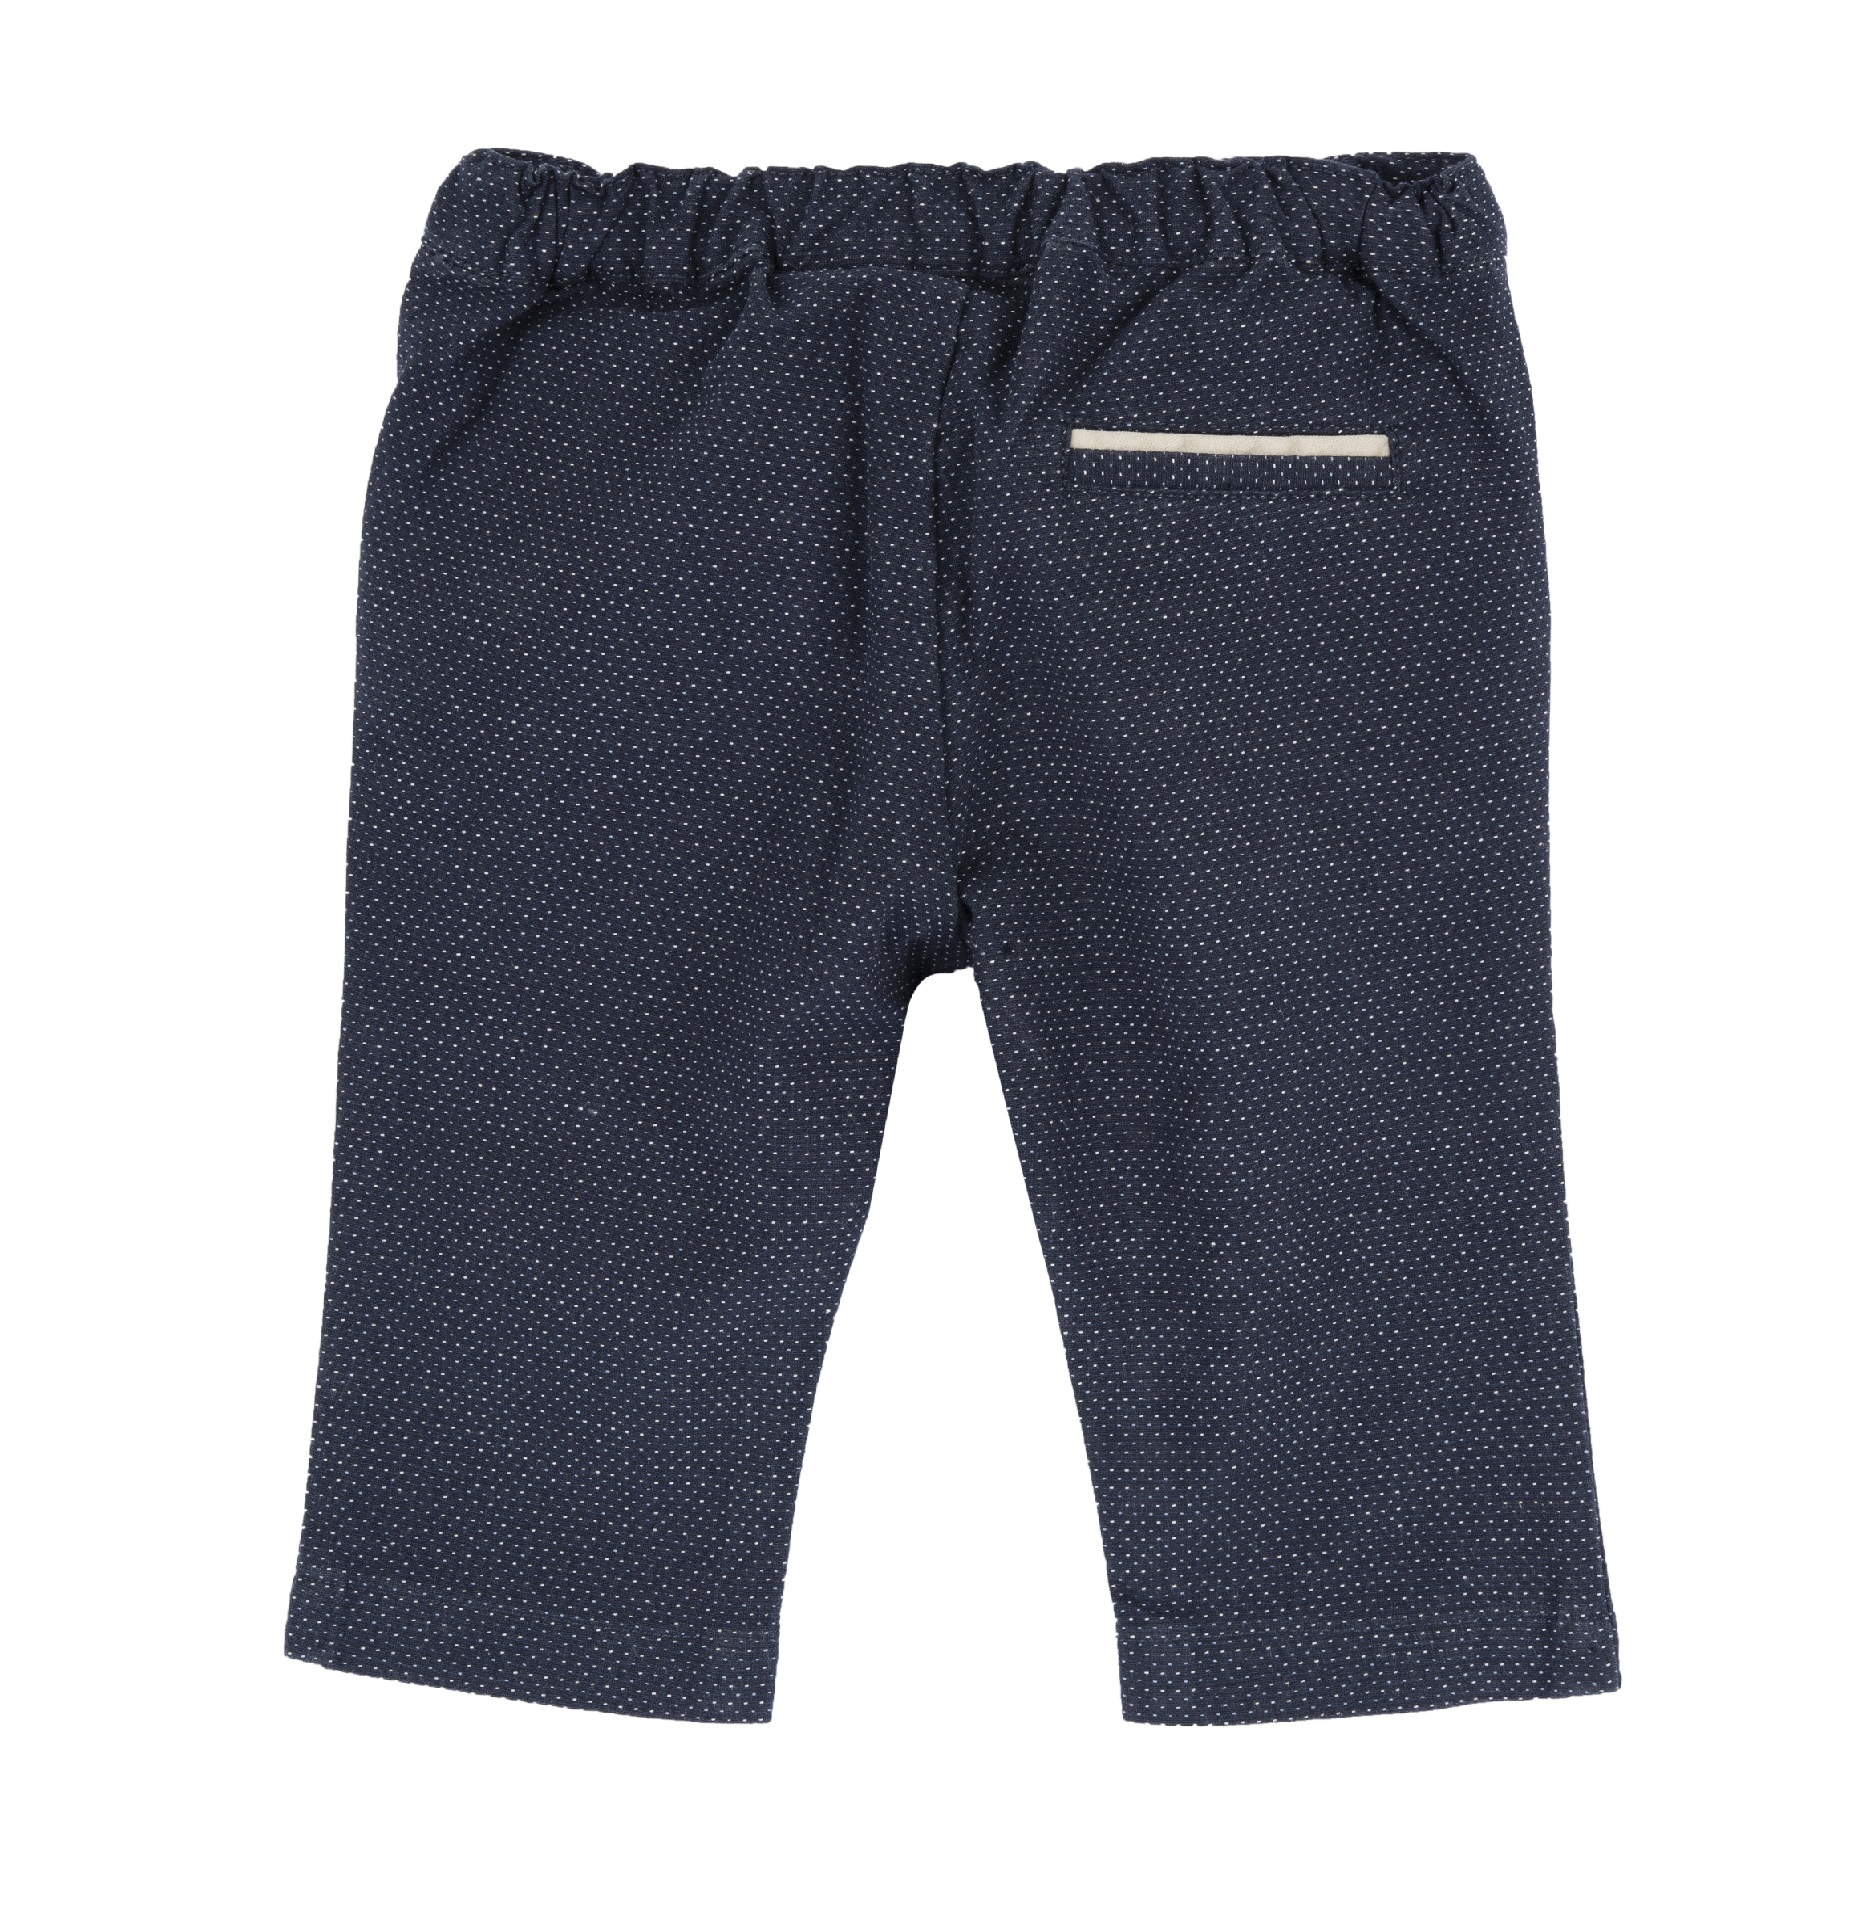 Pantaloni Copii Chicco, Albastru Inchis, 08826-64mfco